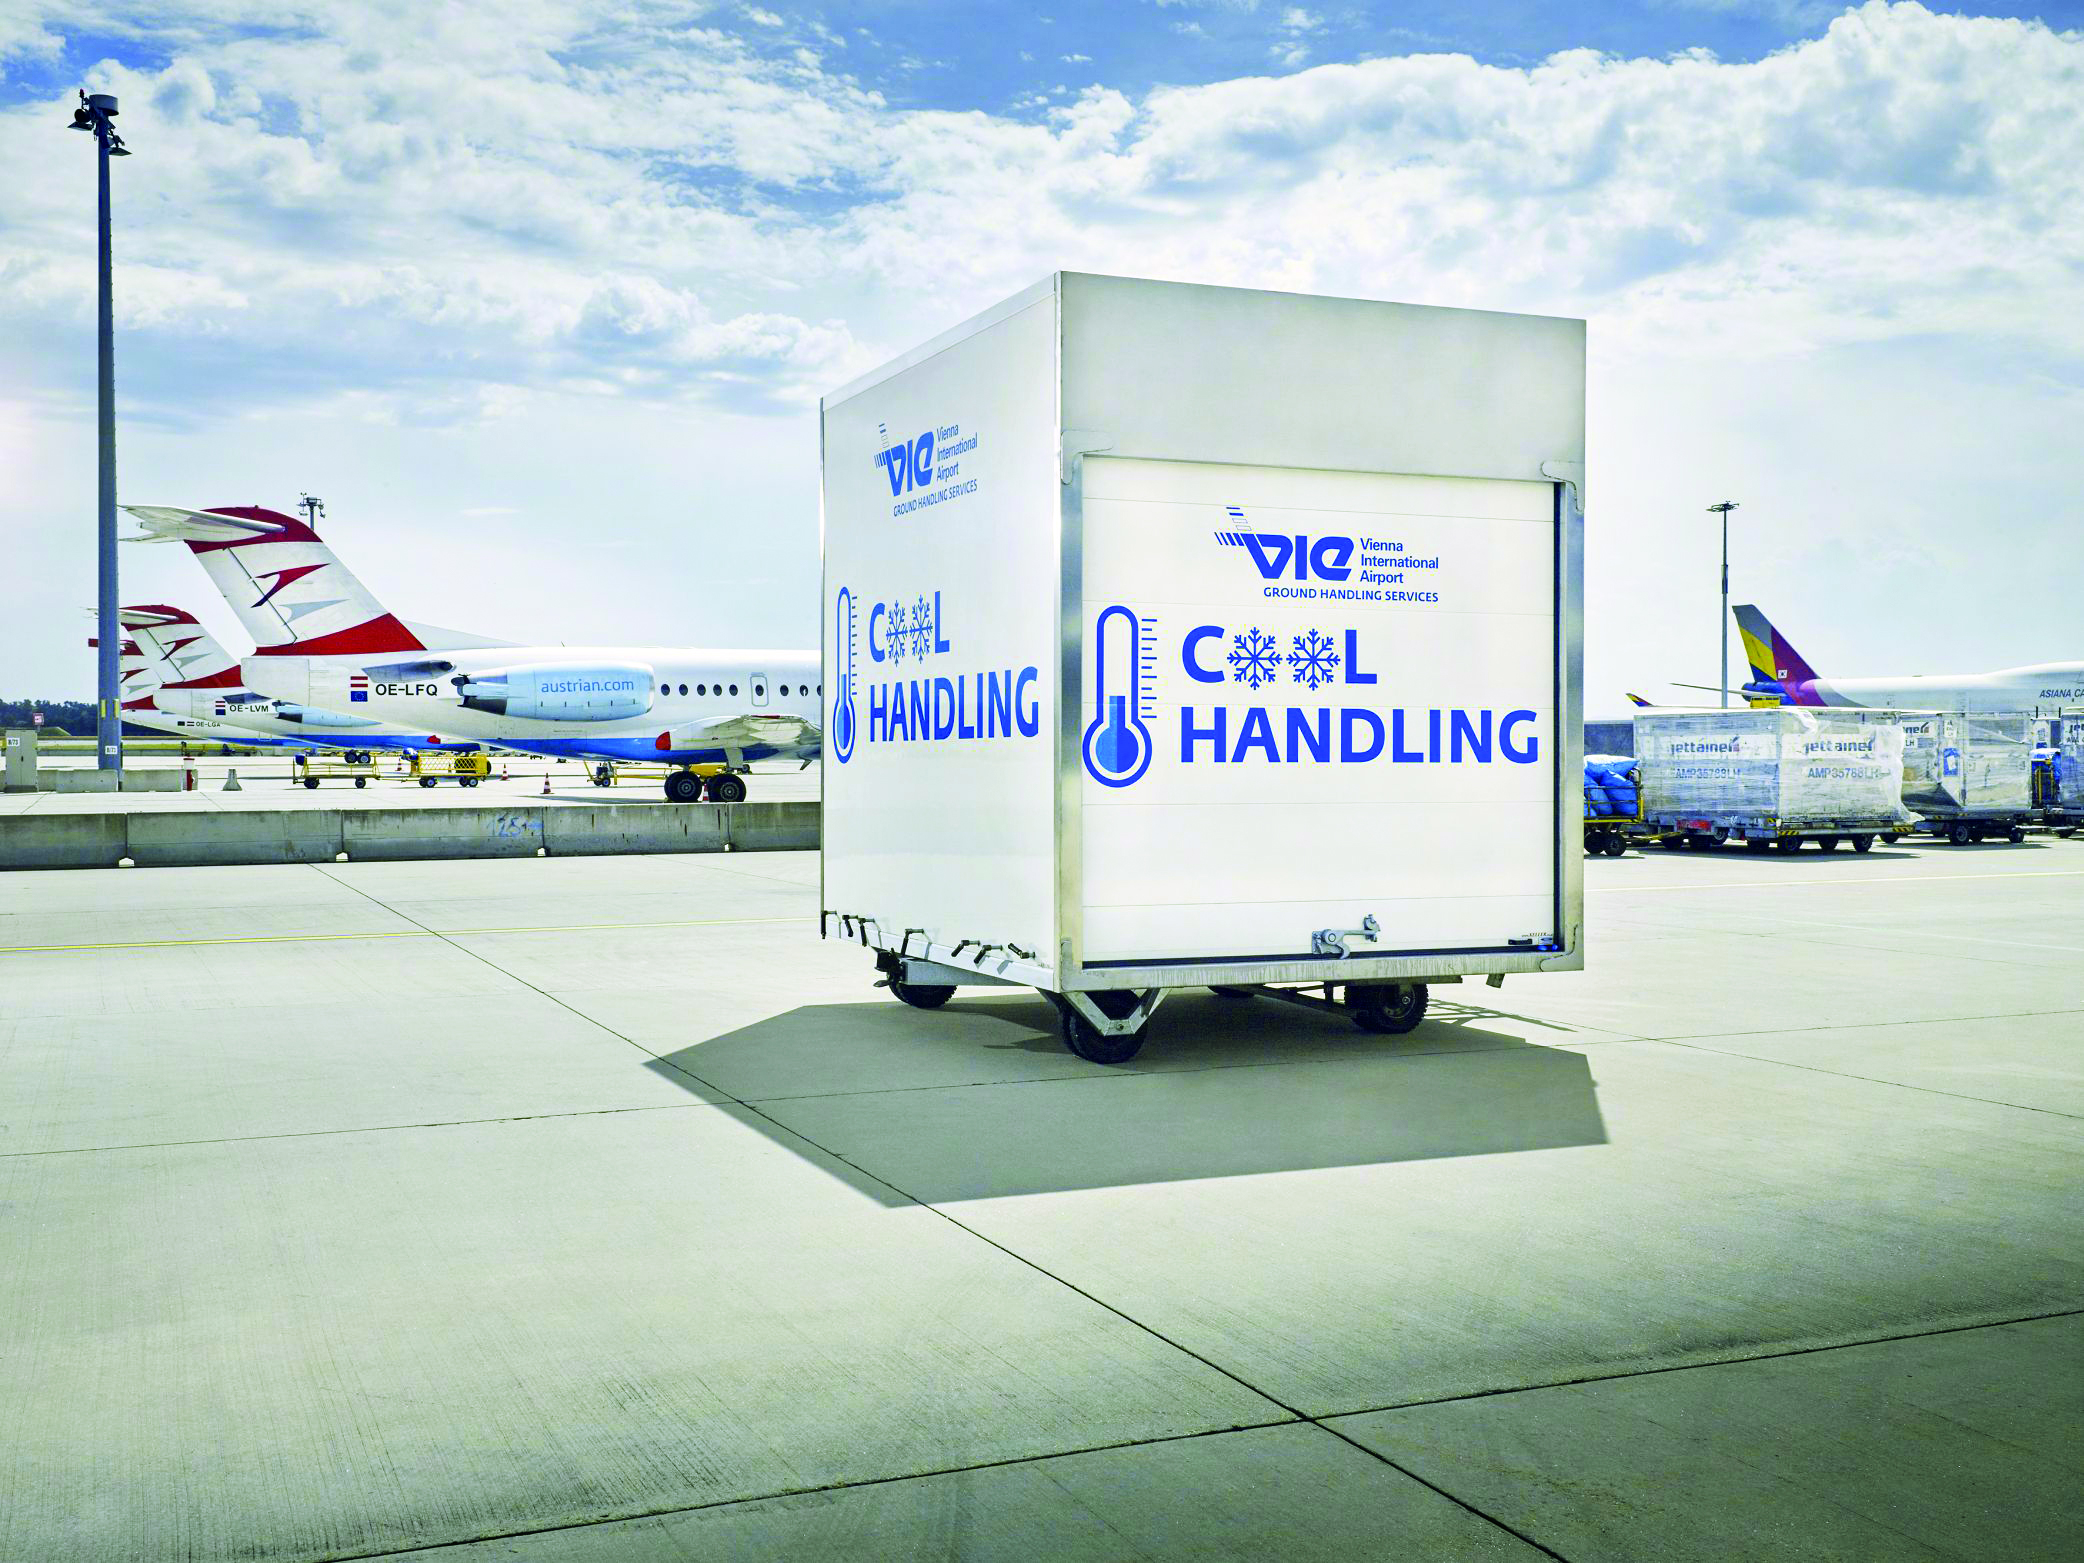 Flughafen Wien: Positive Entwicklung bei Cargo im Jahr 2018